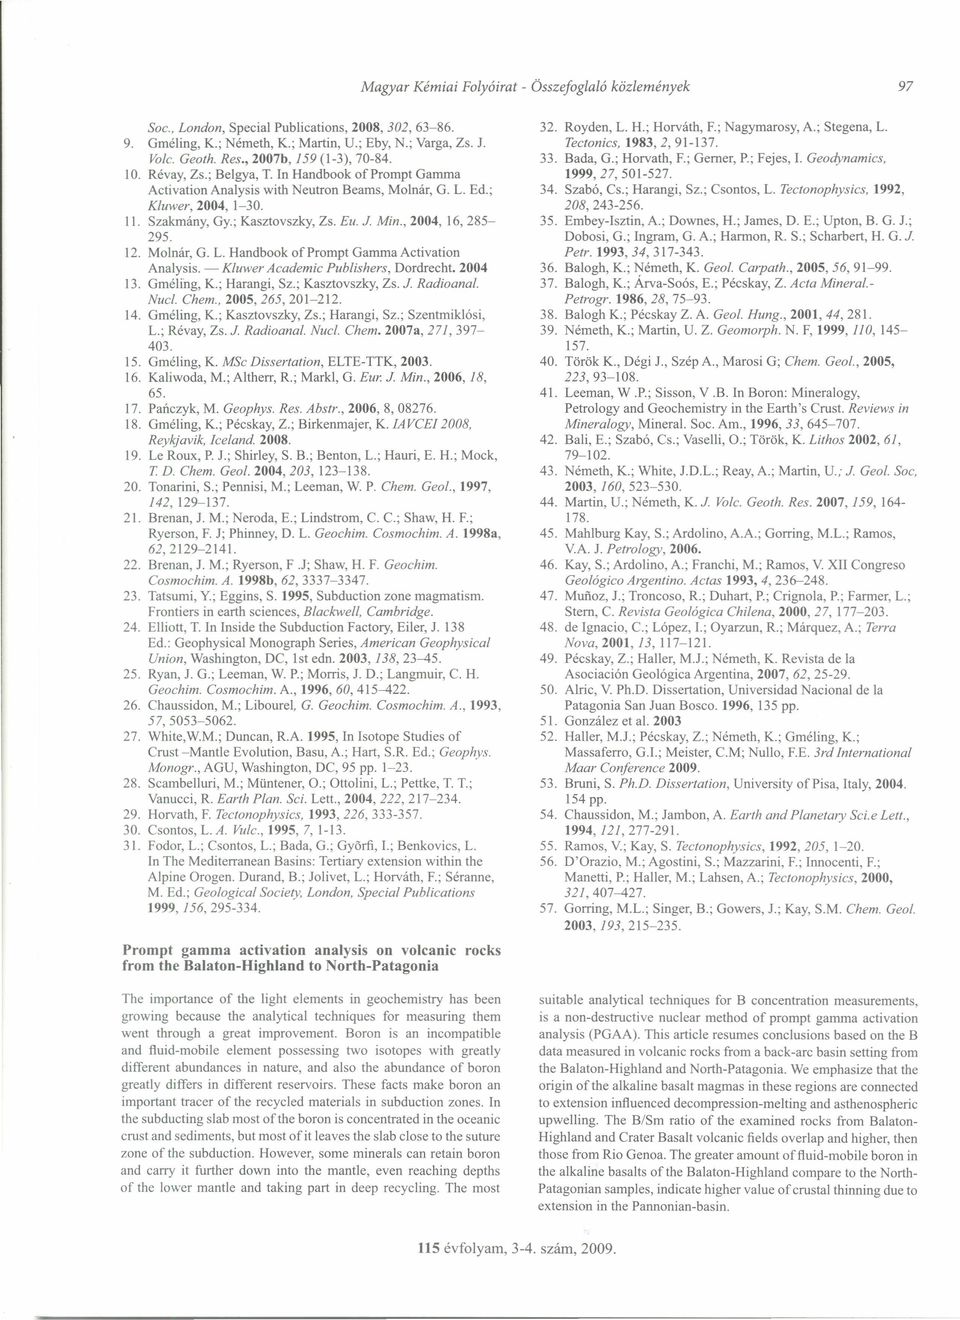 J. Min., 2004, 16, 285-295. 12. Molnár, G. L. Handbook of Prompt Gamma Activation Analysis. - Kluwer Academic Publishers, Dordrecht. 2004 13. Gméling, K.; Harangi, Sz.; Kasztovszky, Zs. J. Radioanal.